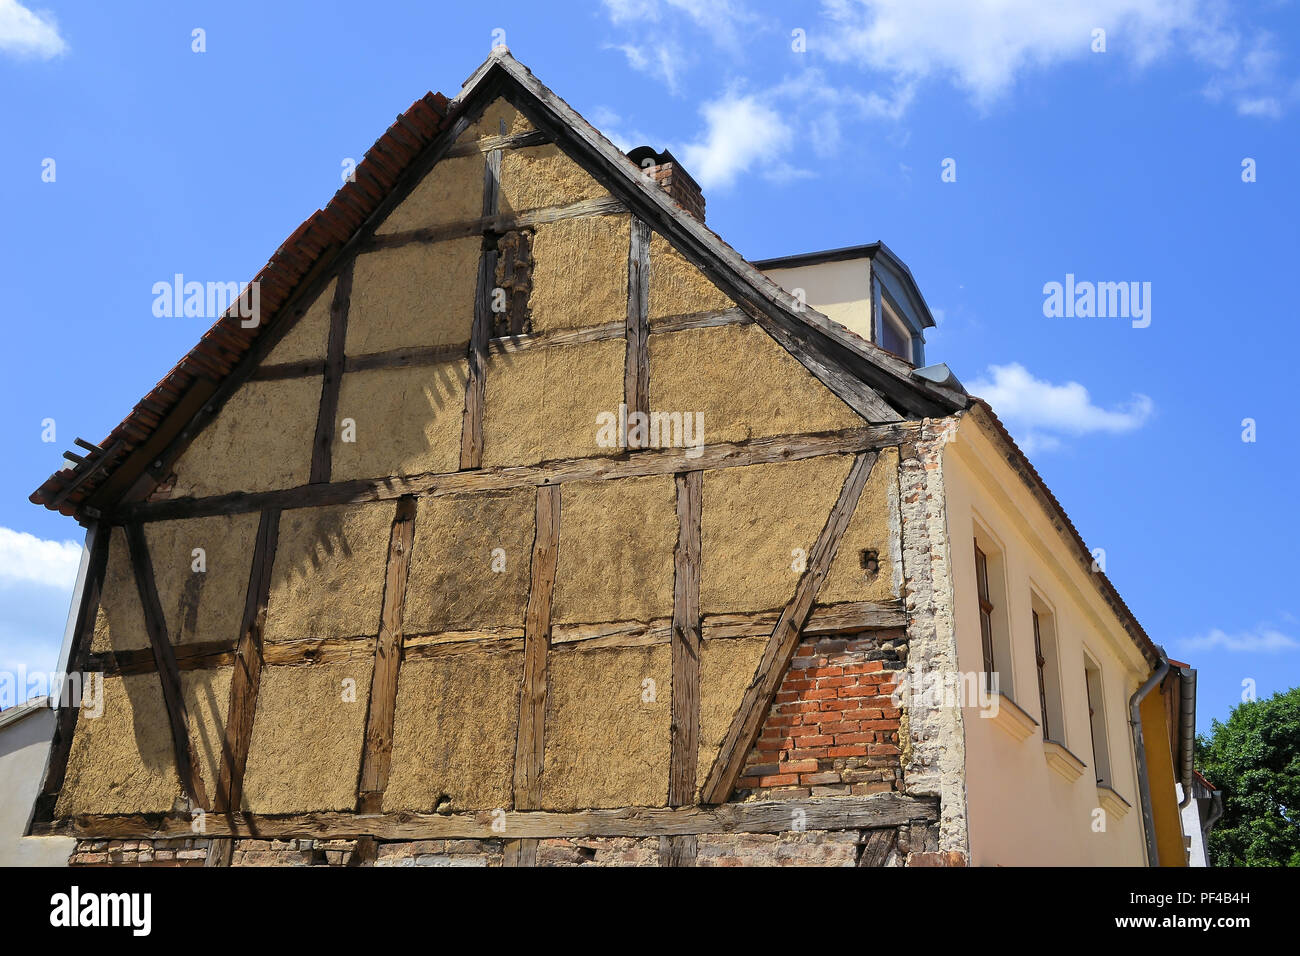 Maison à colombages dans la vieille ville de Brandebourg Banque D'Images